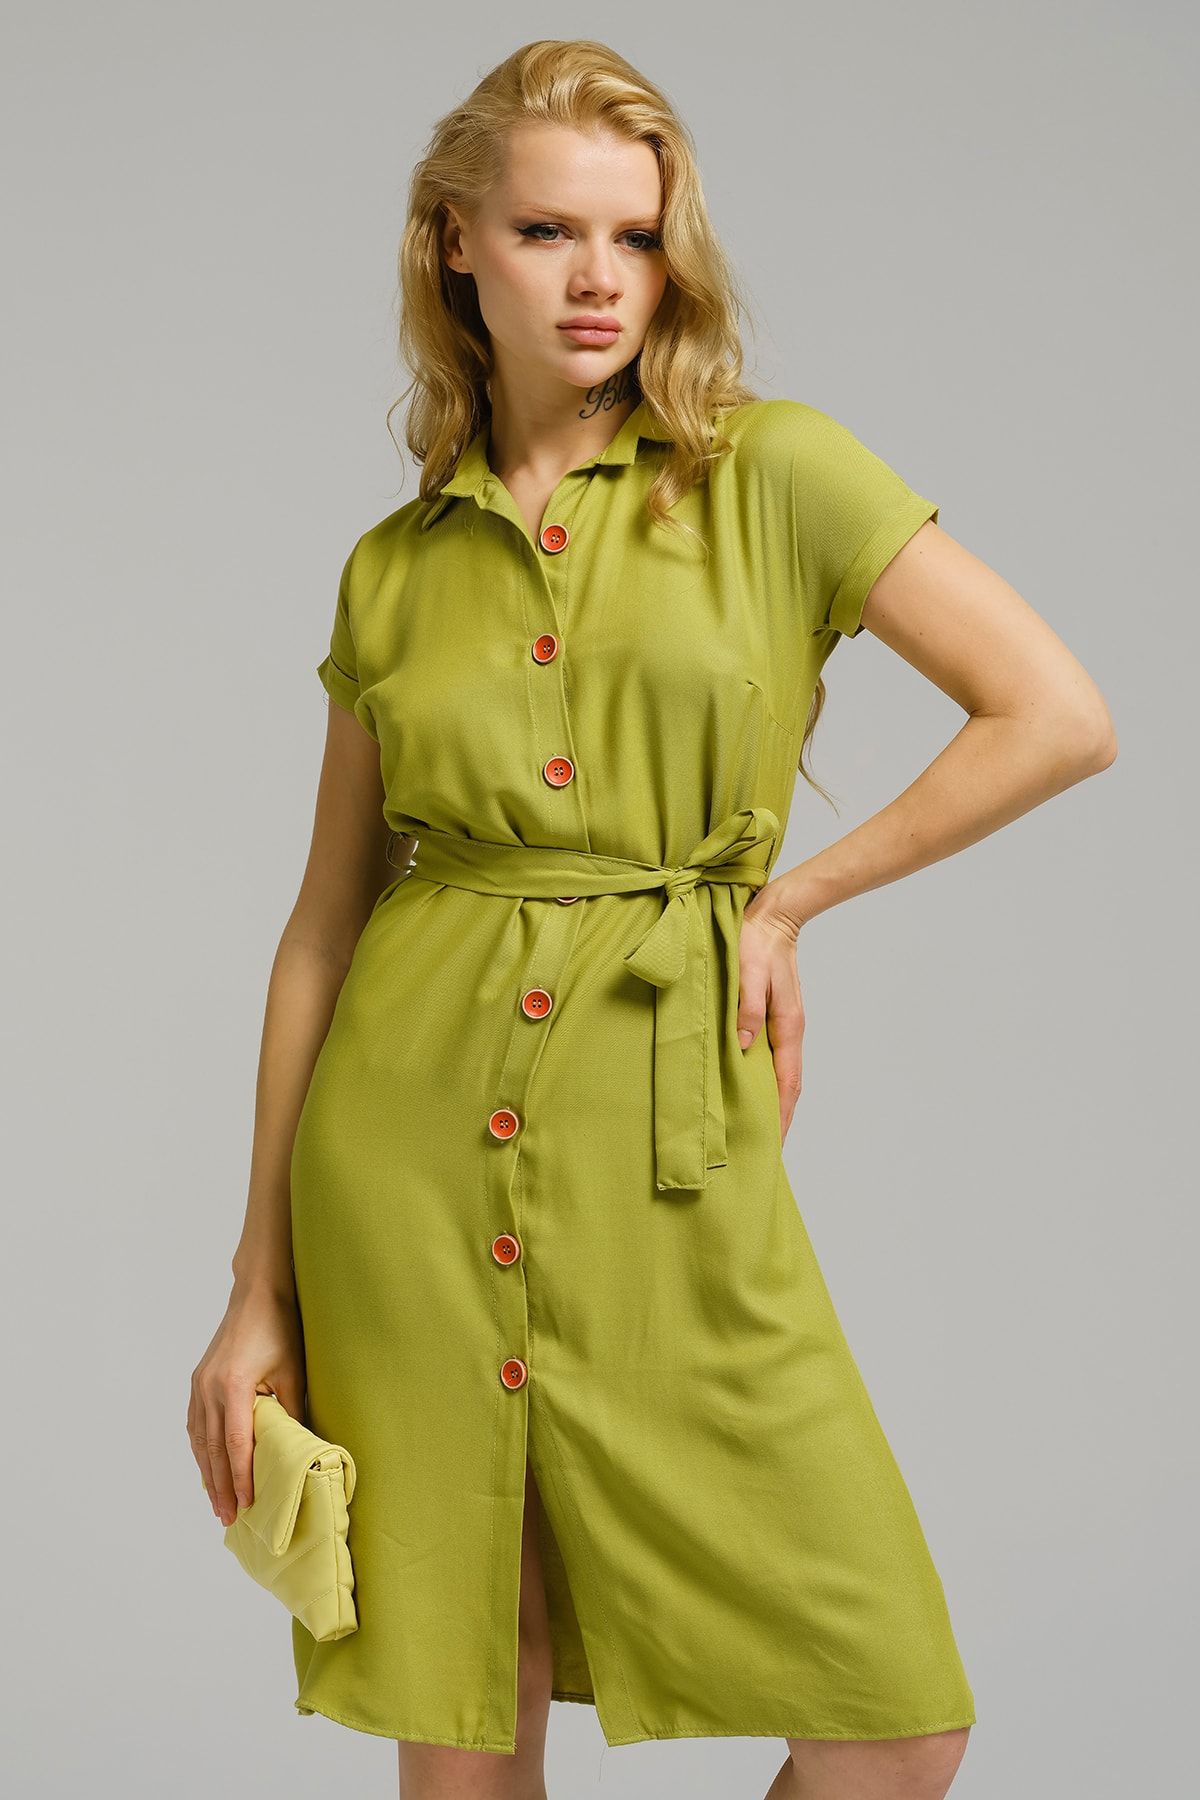 Kadın Yağ Yeşili Beli Kemerli Kısa Kol Gömlek Elbise ARM-19Y001068